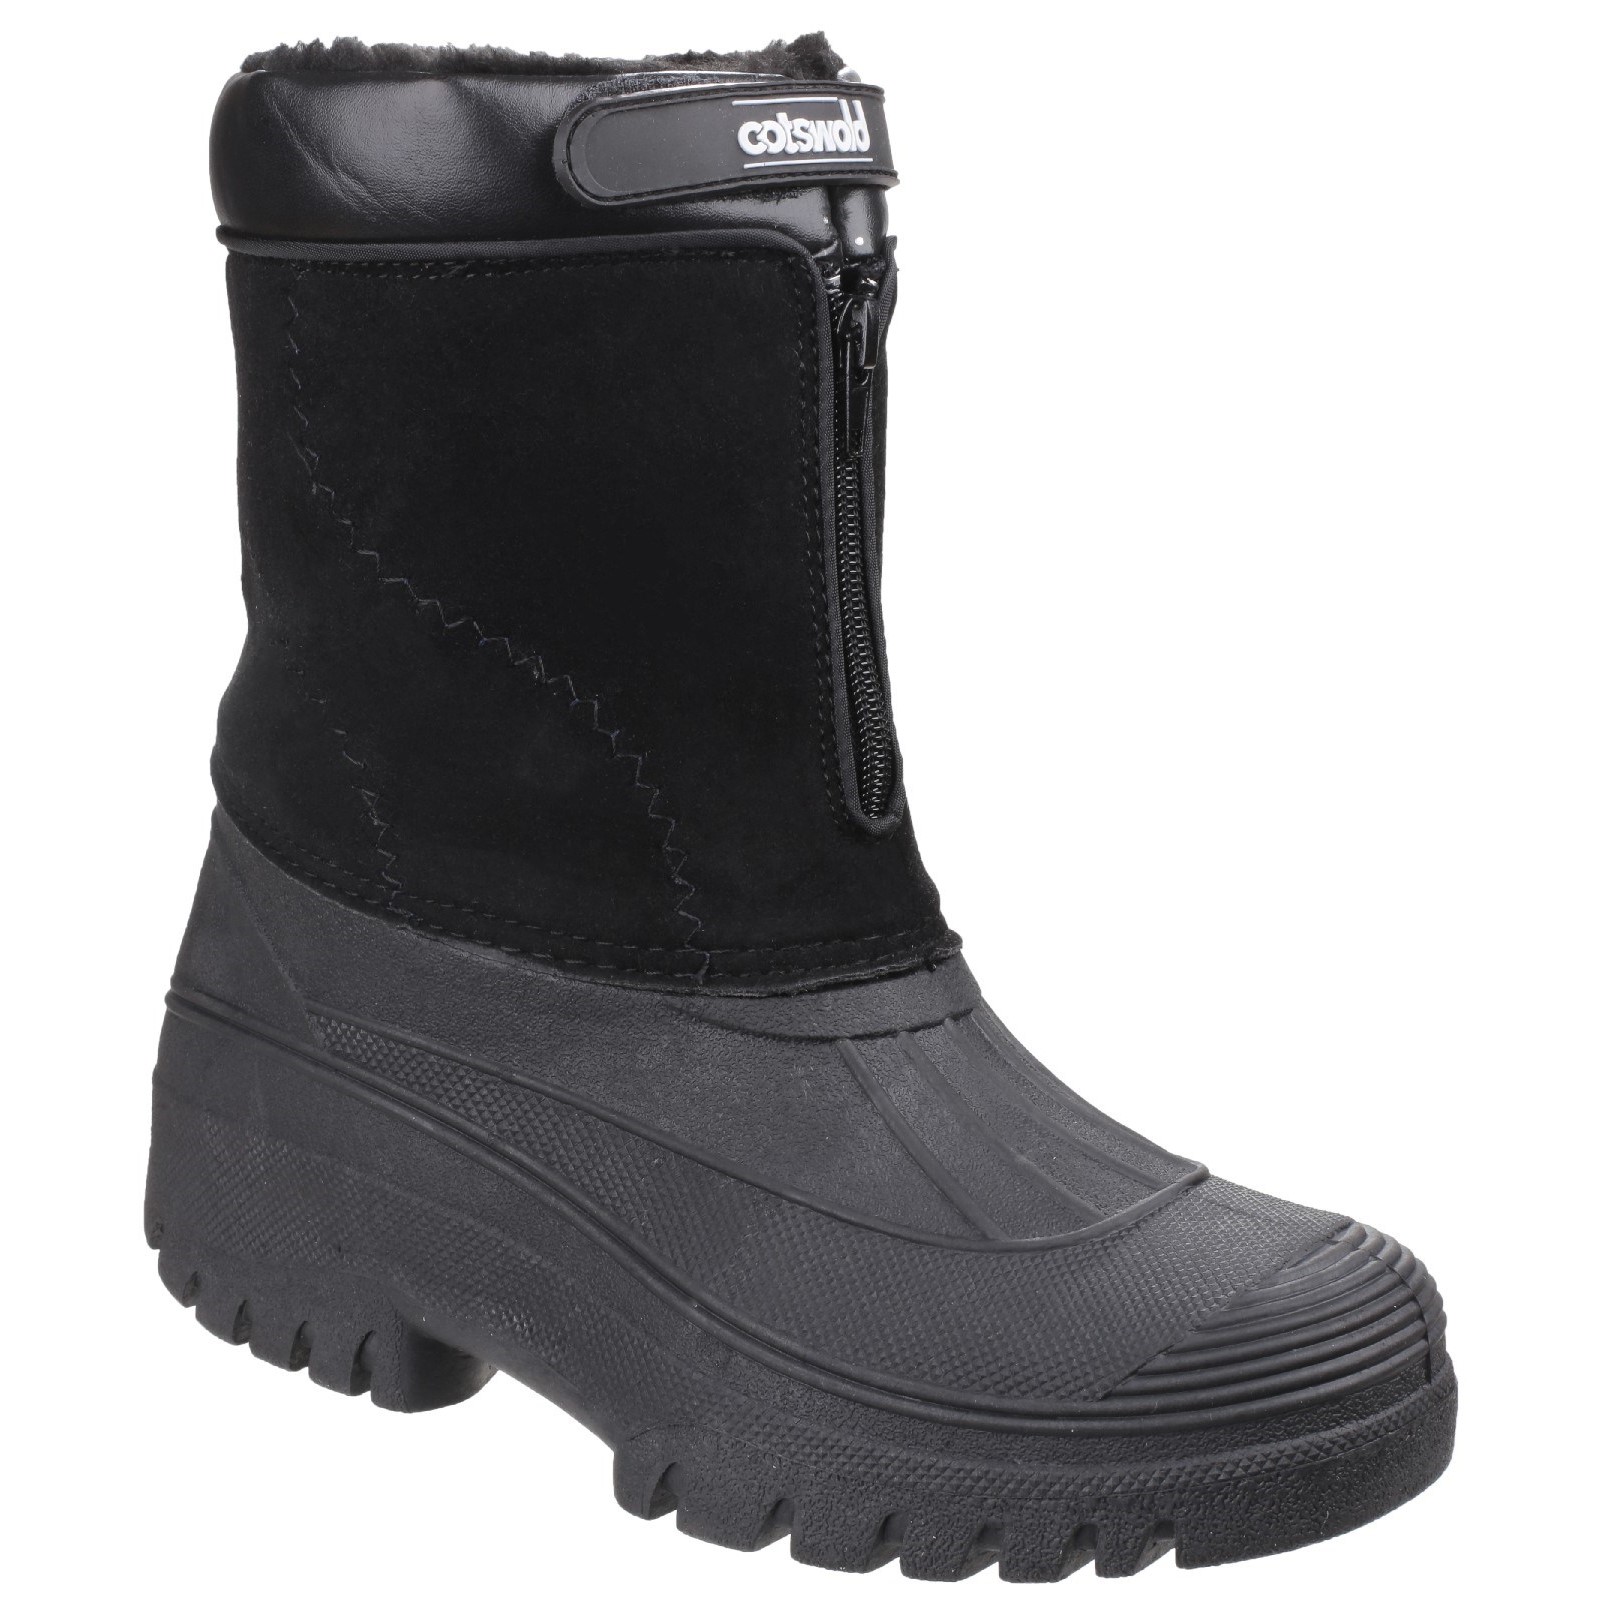 Venture Waterproof Winter Boot